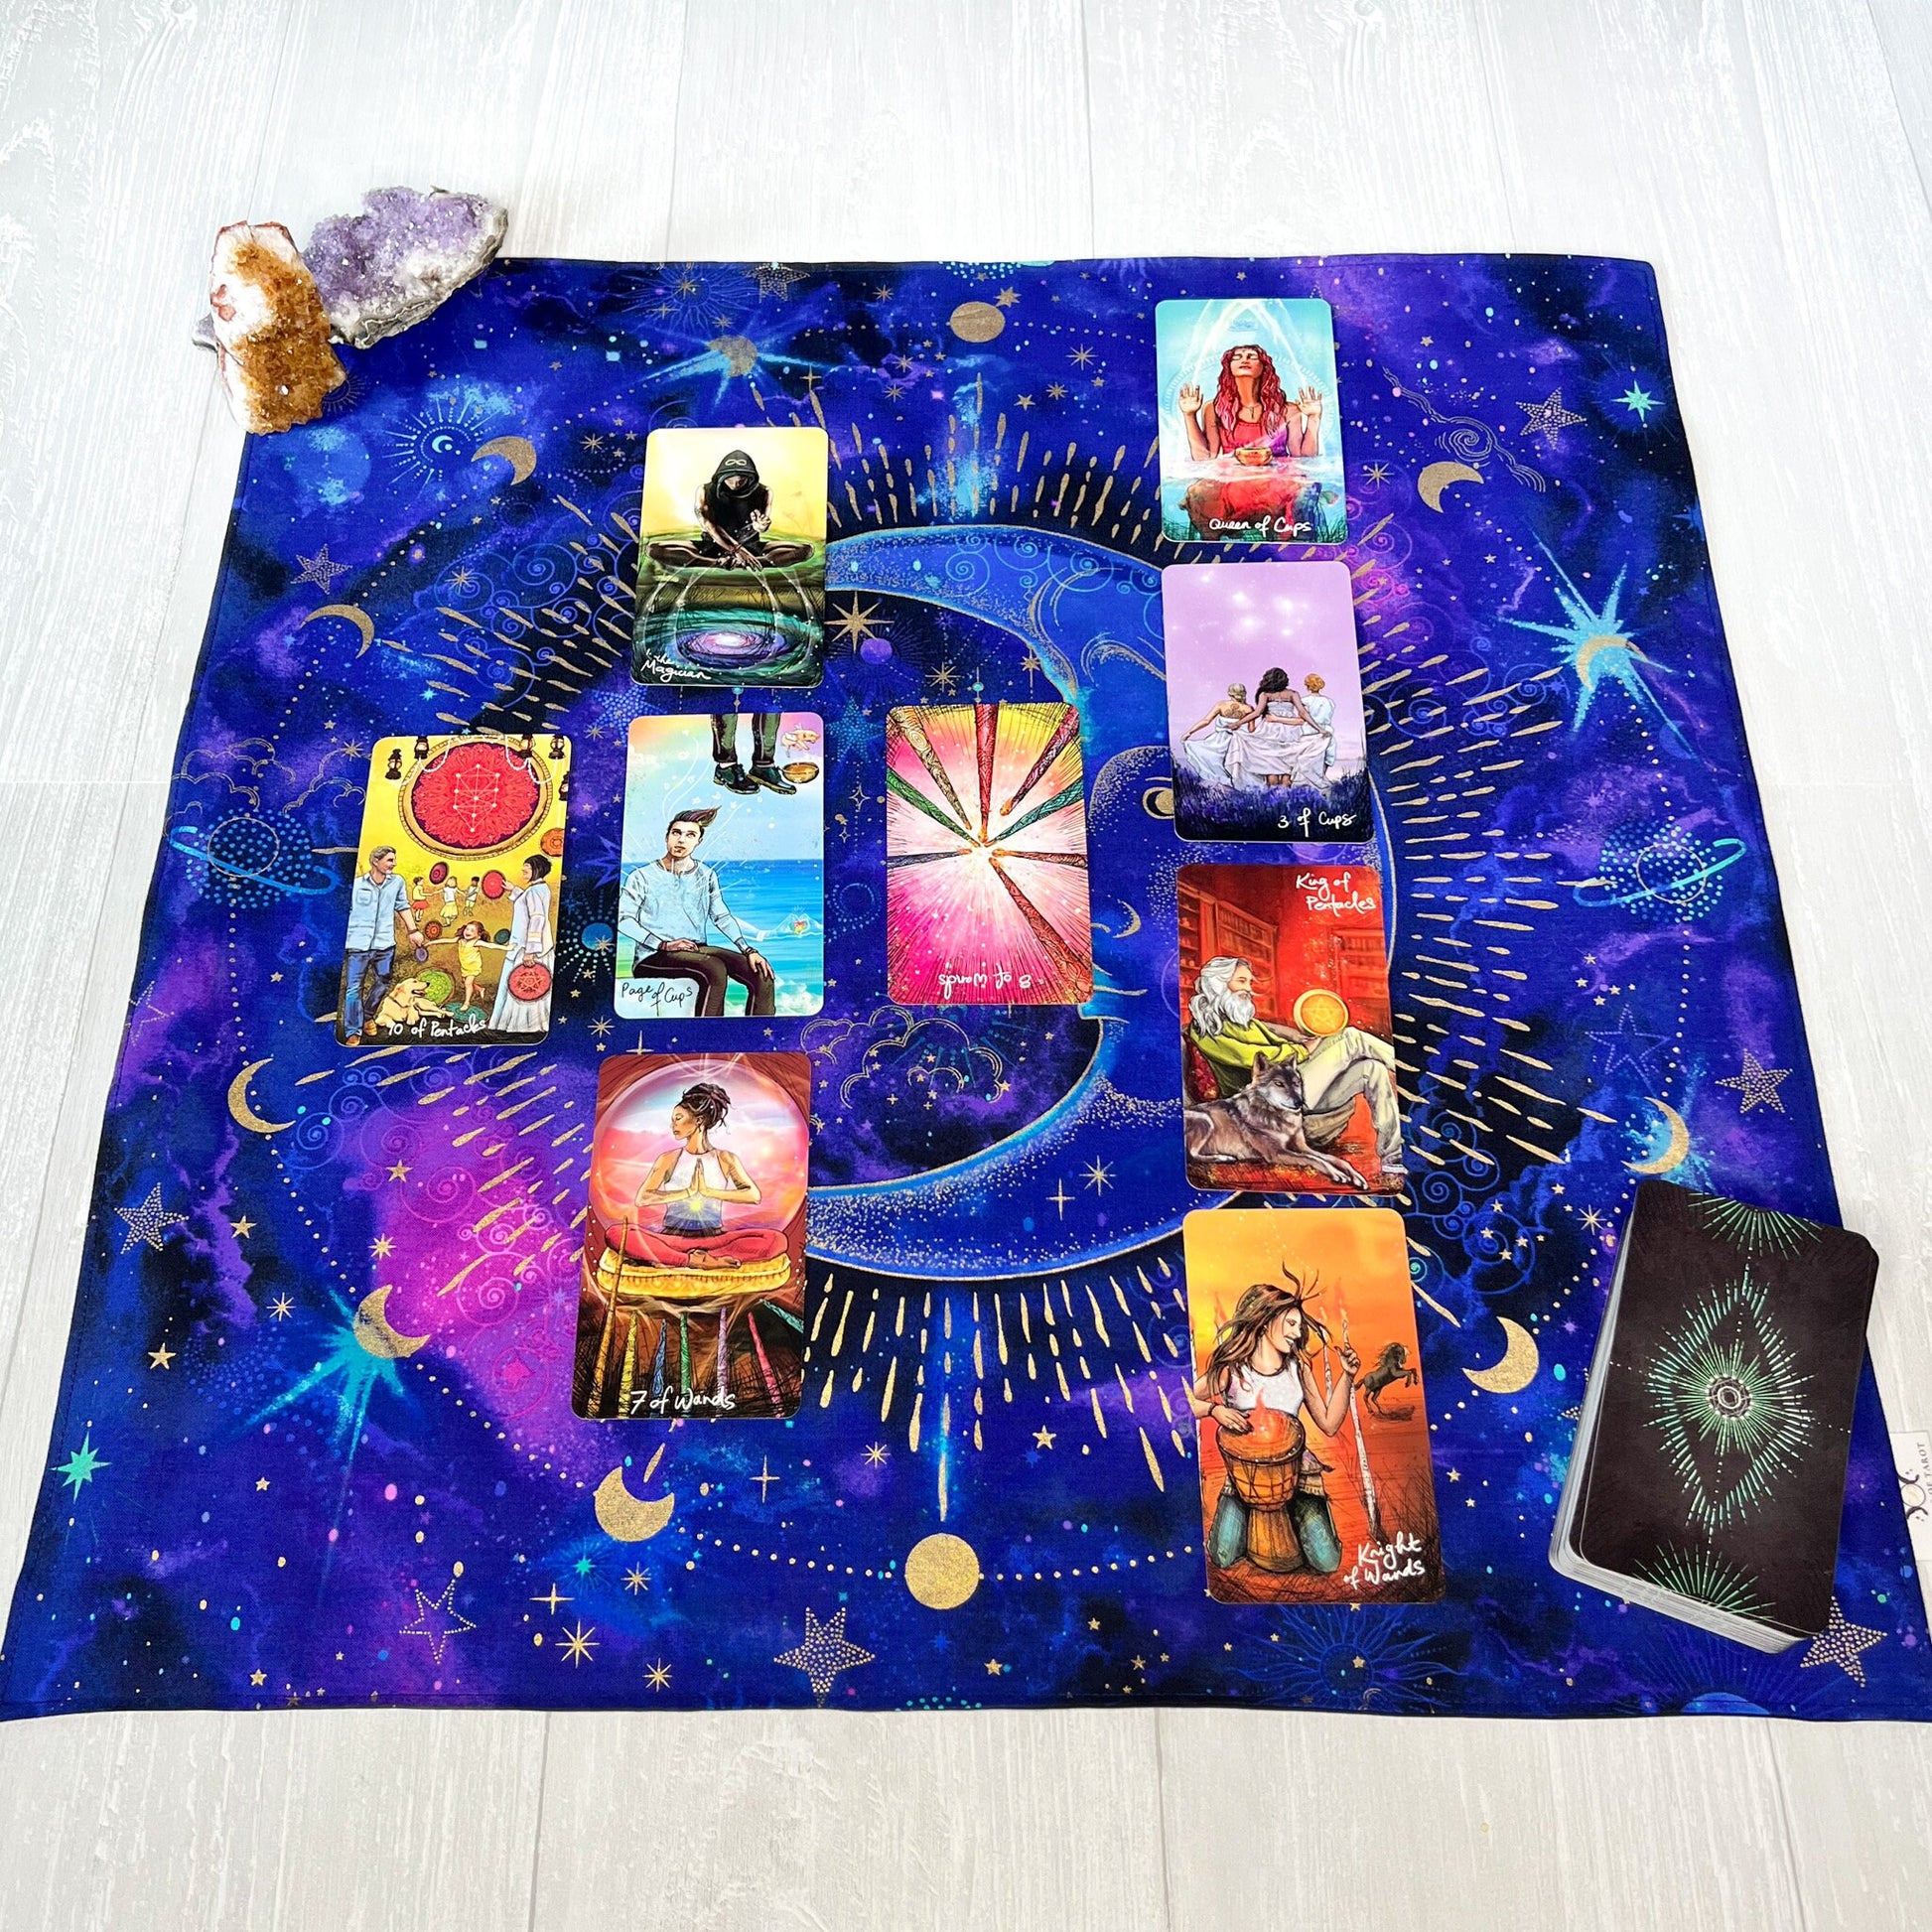 Crescent Moon Altar Cloth, Tarot Reading Cloth, Ritual Cloth, Rune Casting, Tarot Reading Supplies, Witchy Gift Supplies, Divination Tools